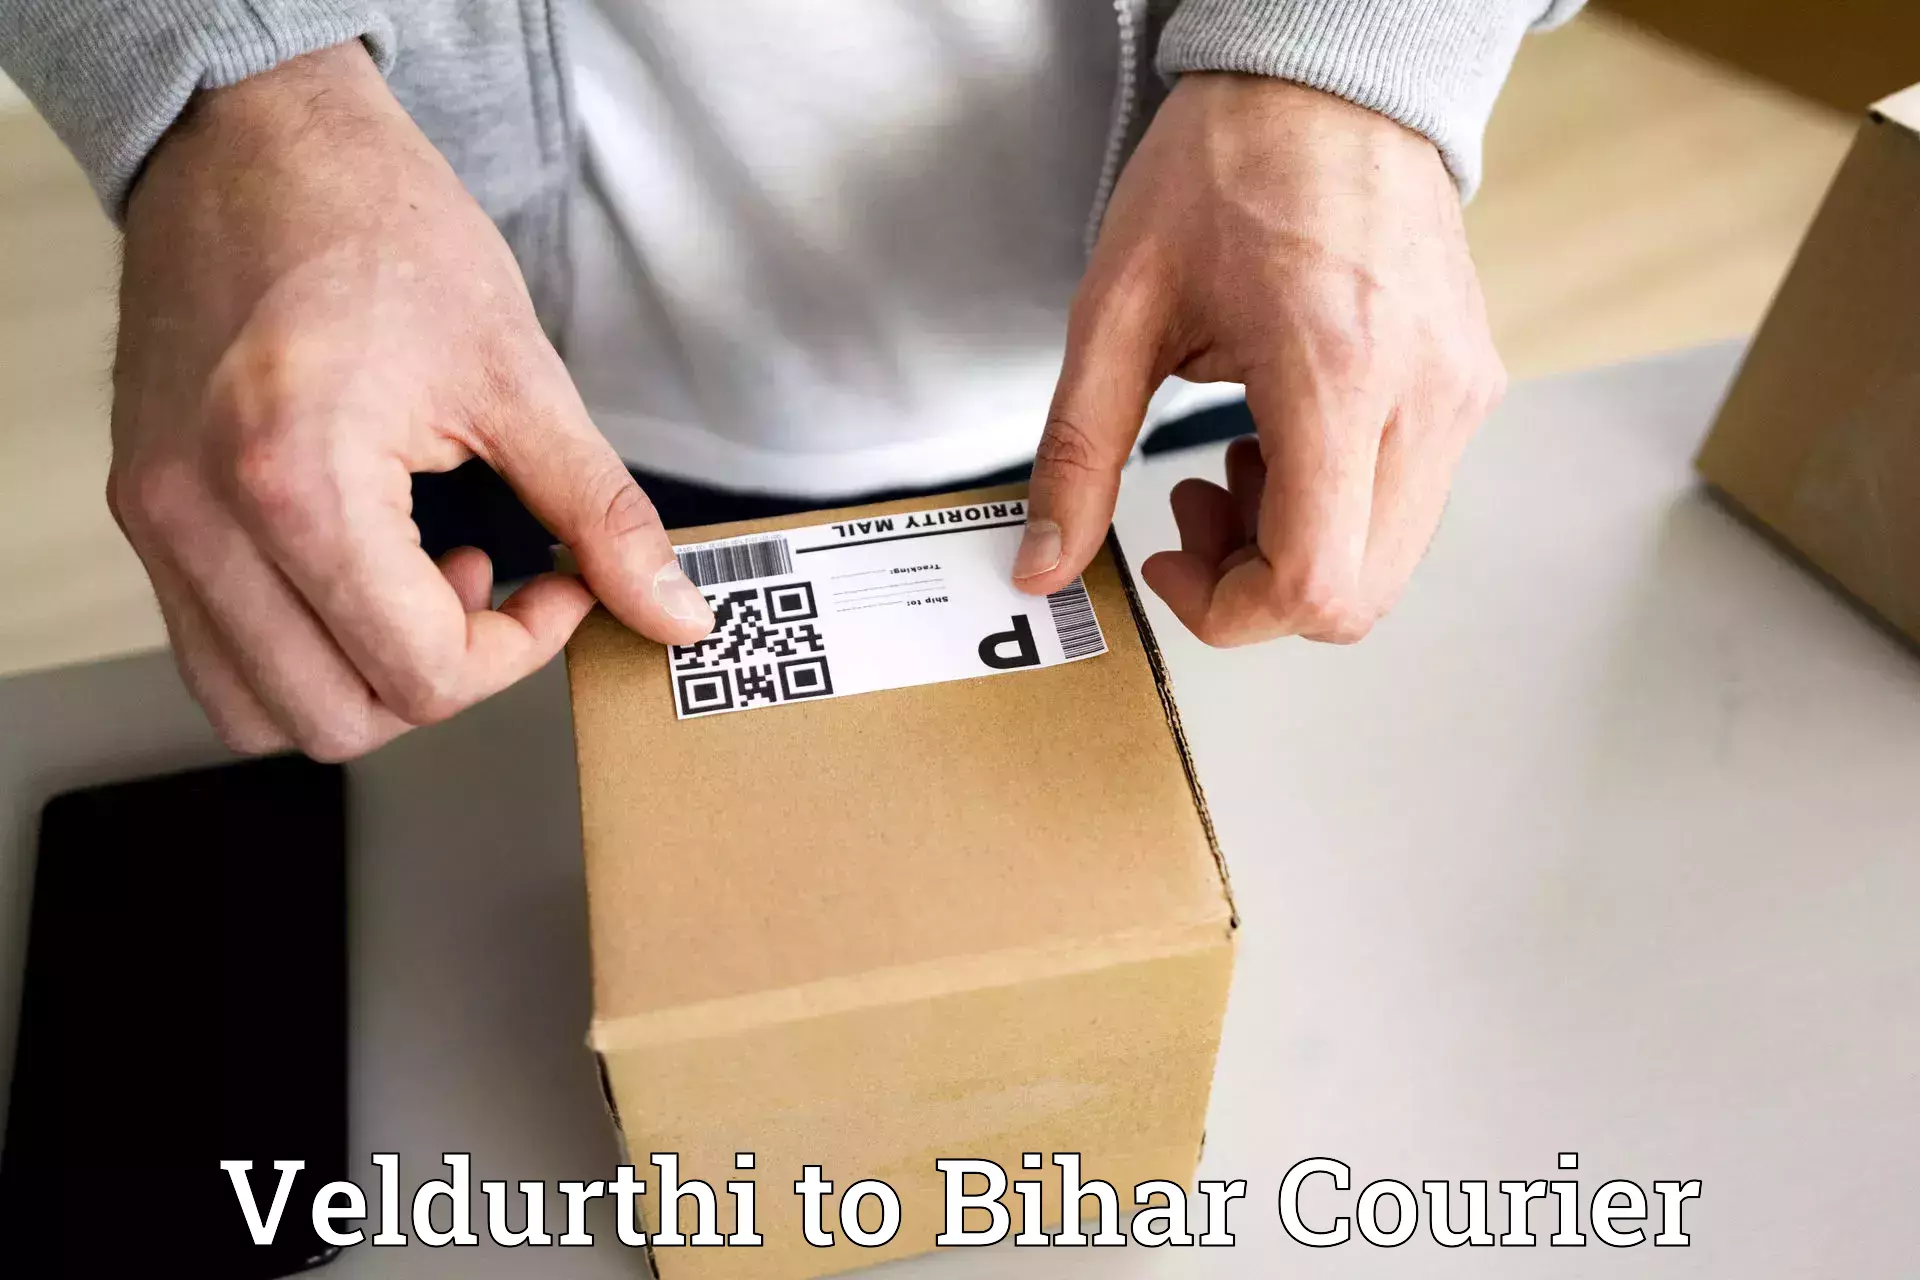 Premium courier services Veldurthi to Bihar